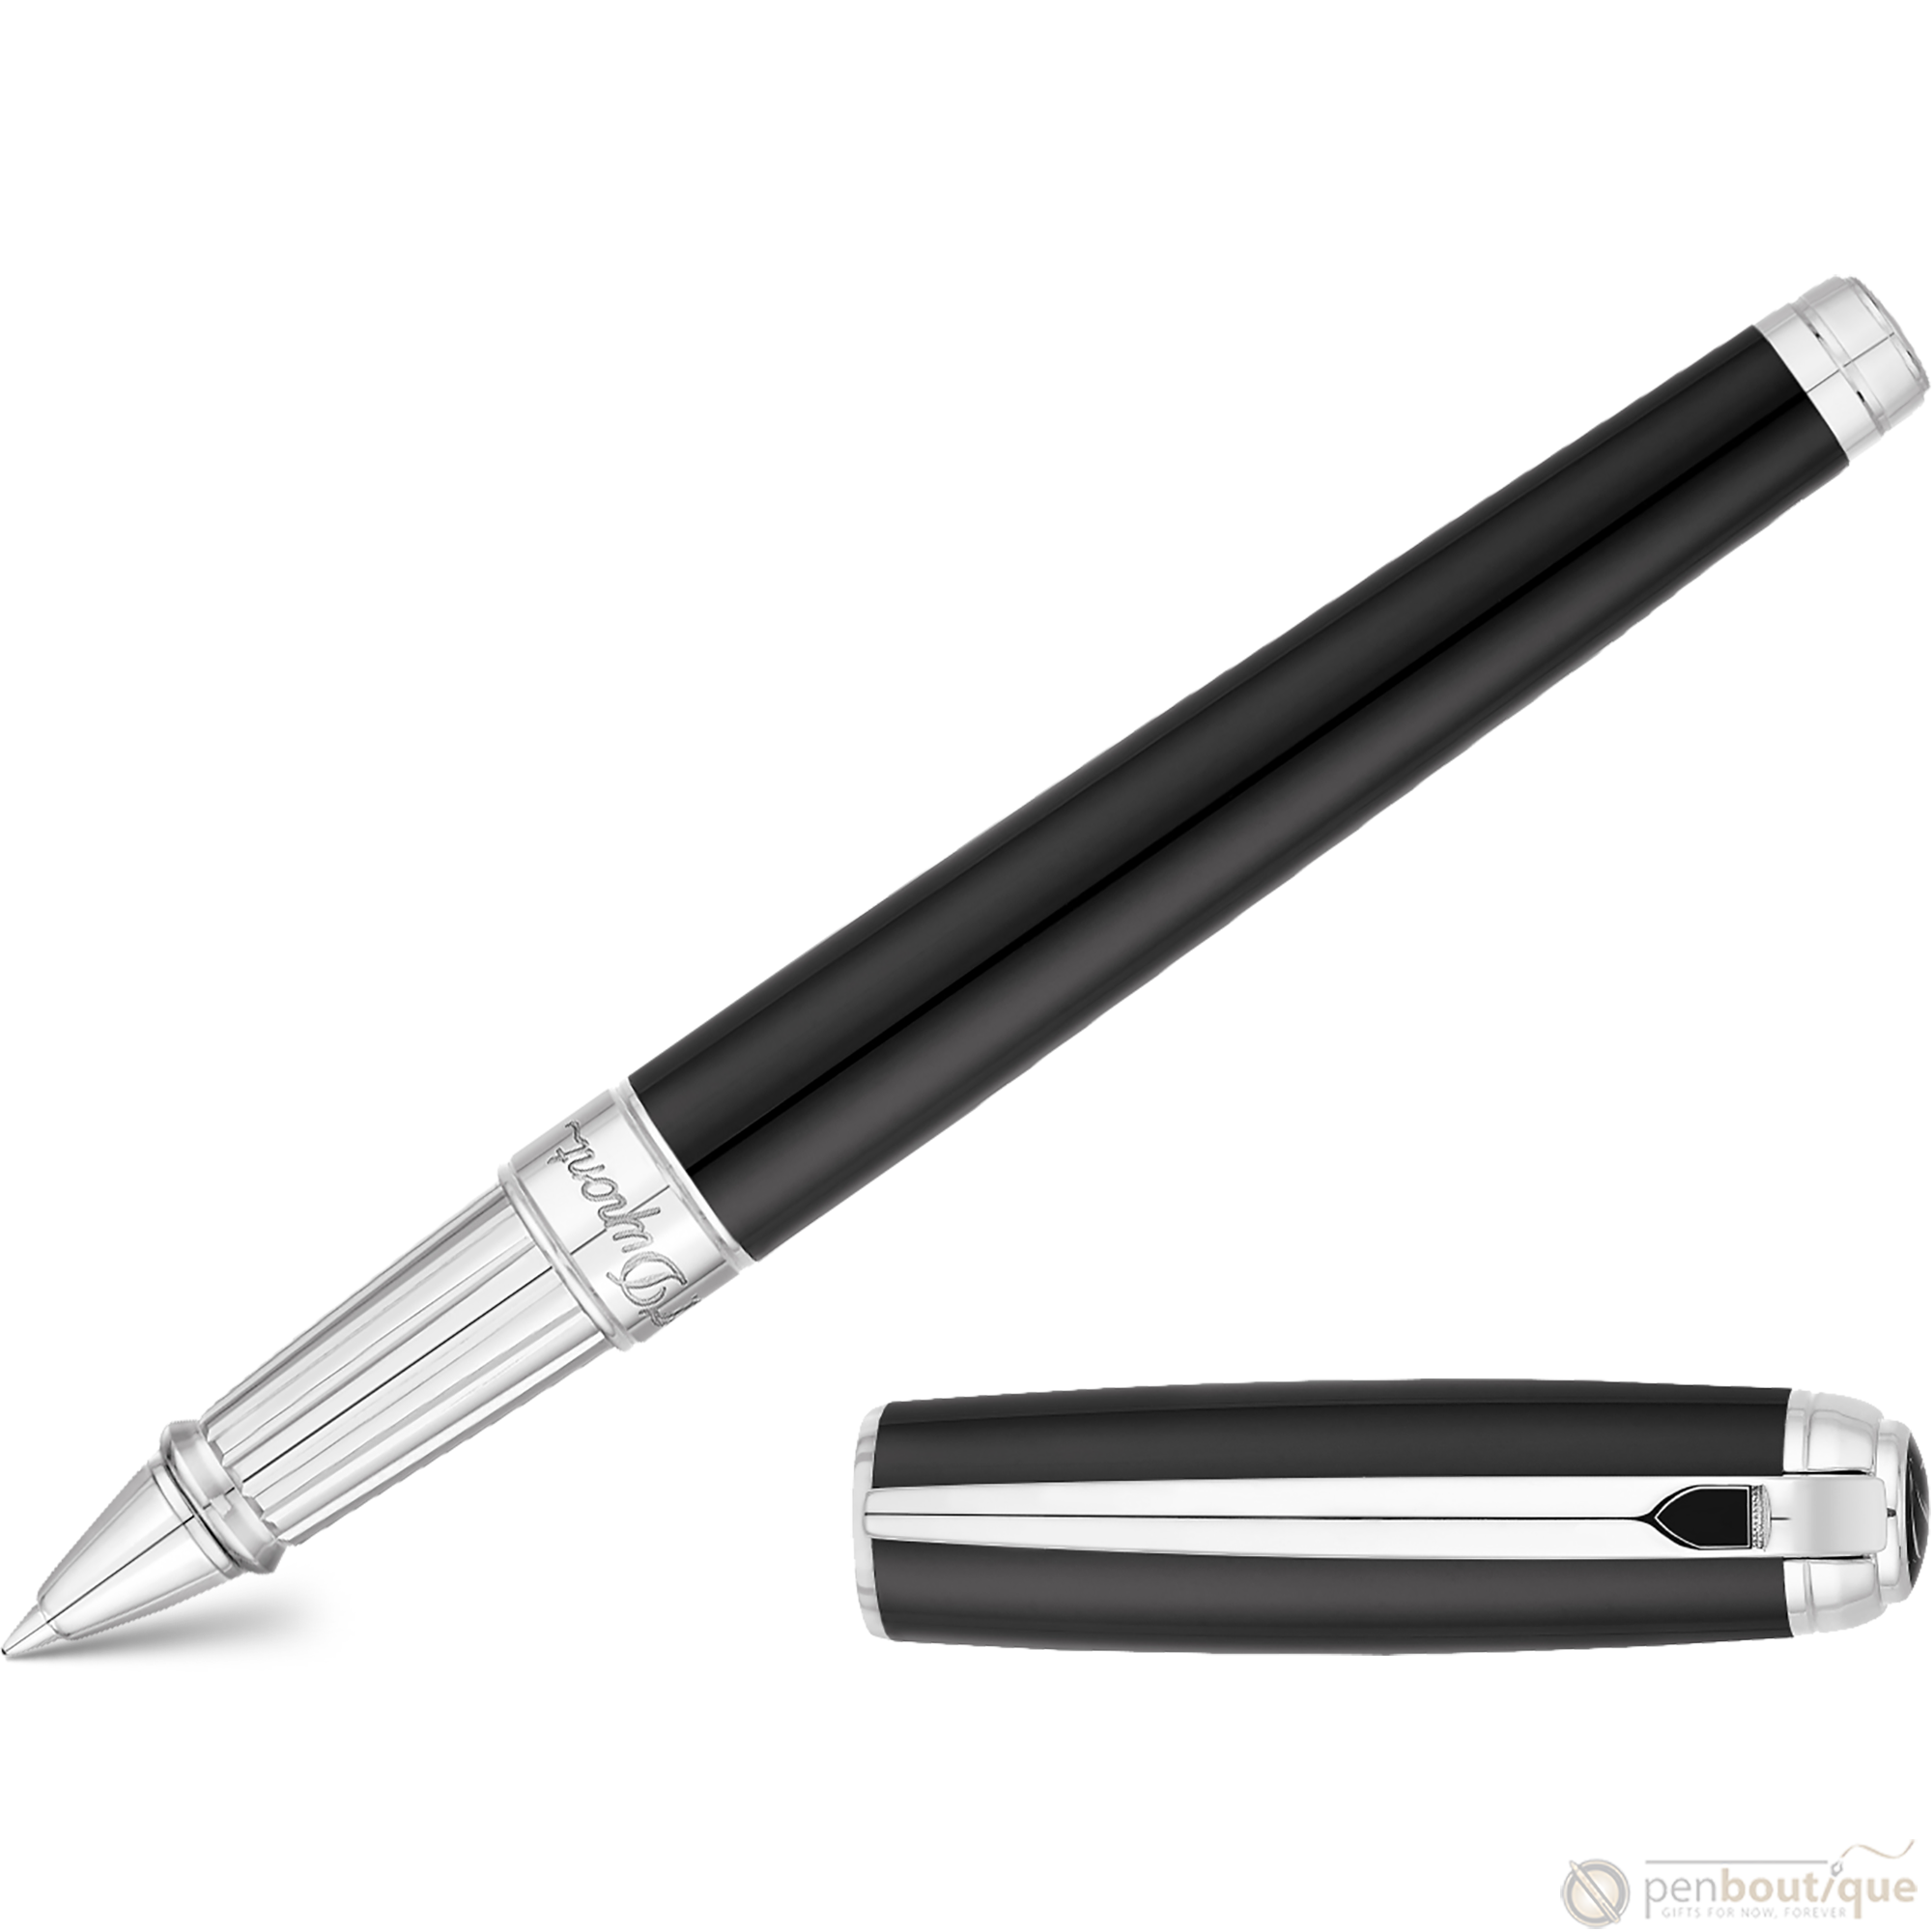 S T Dupont Line D Rollerball Pen - Black-Pen Boutique Ltd